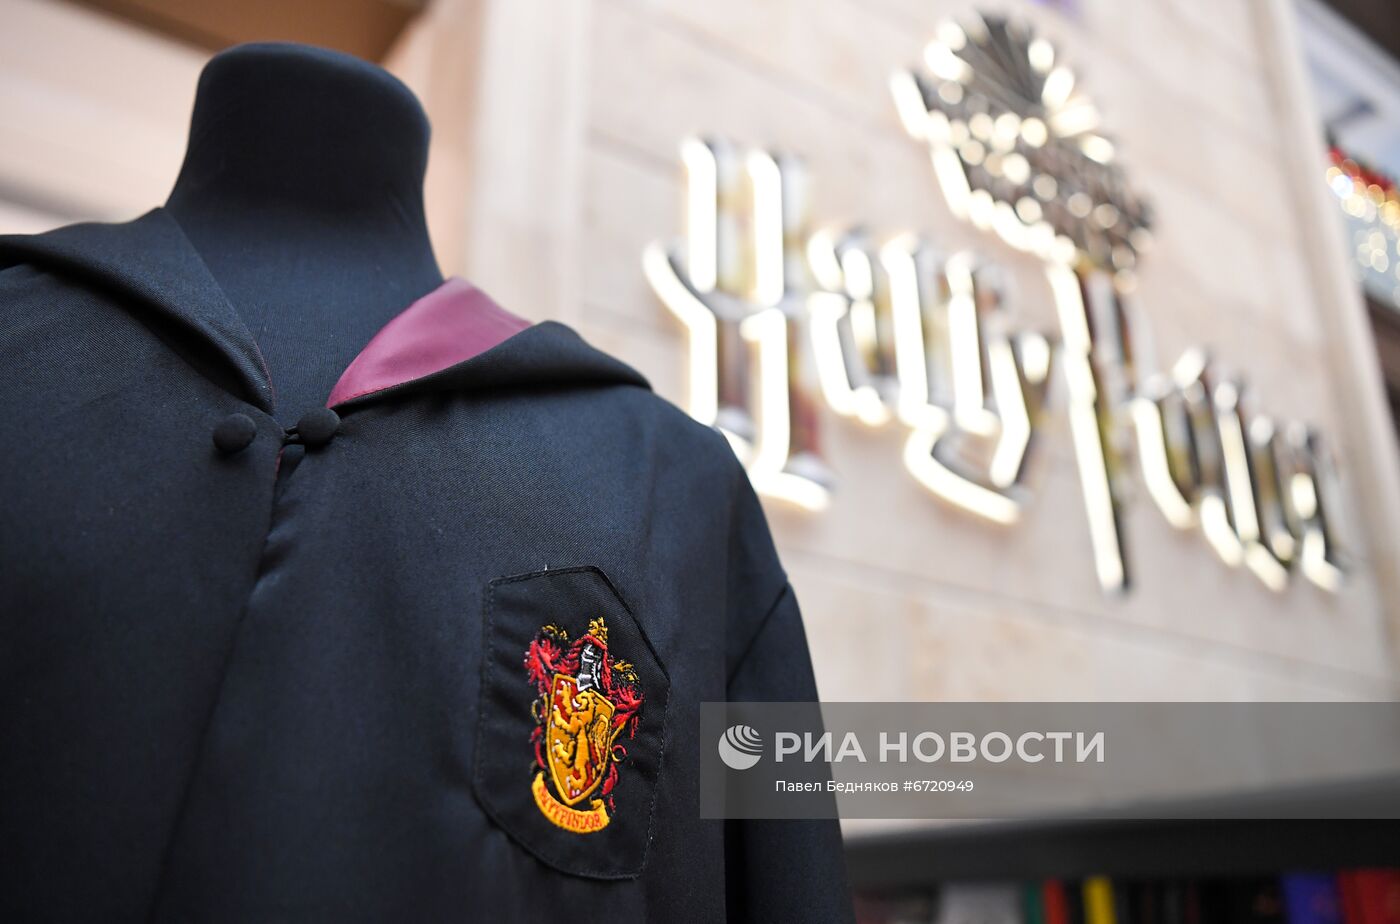 Открытие магазина "Гарри Поттер" в ЦДМ на Лубянке 